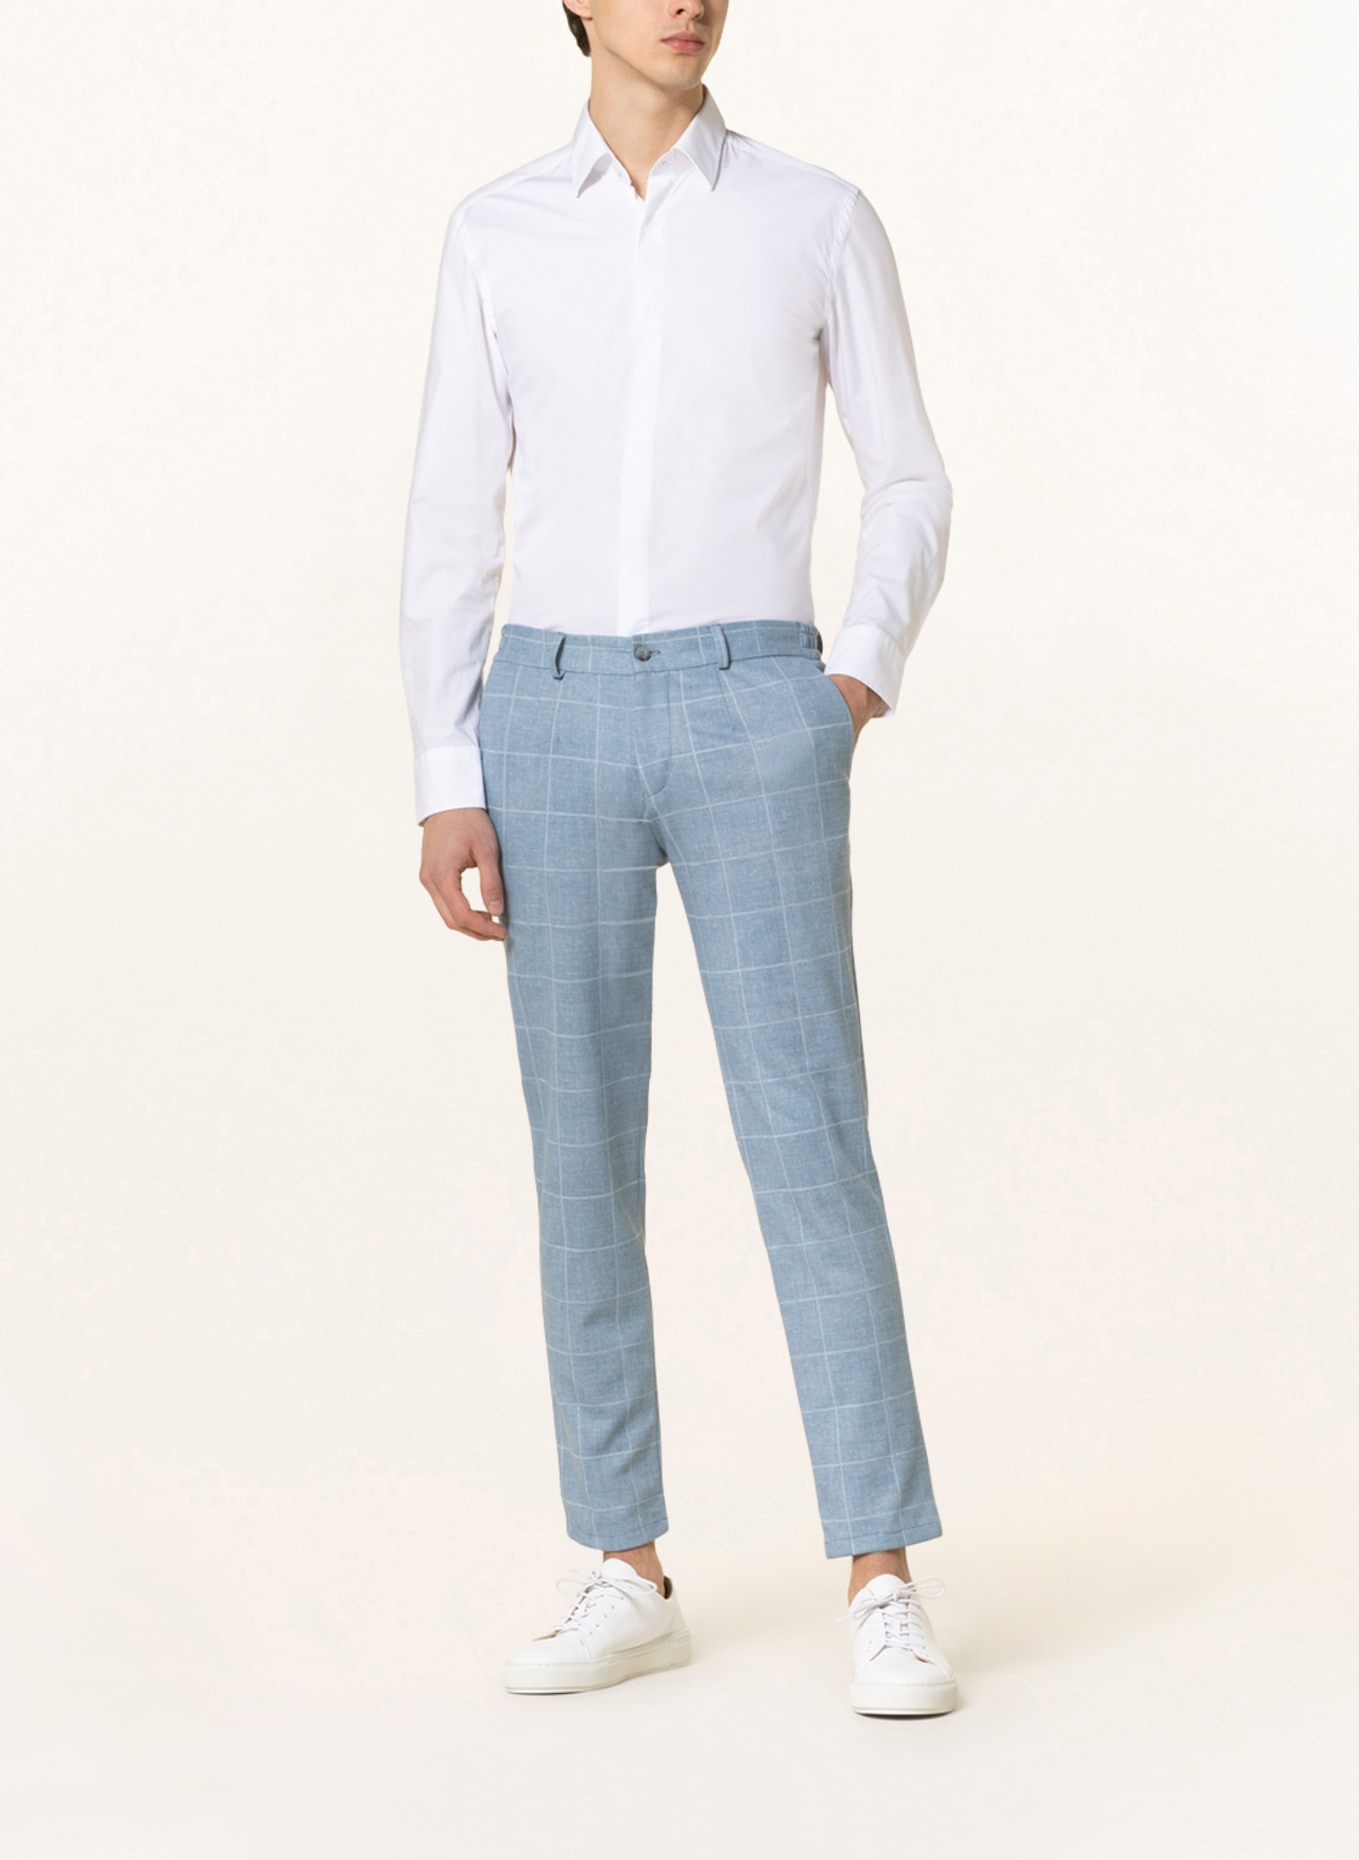 PAUL Suit trousers extra slim fit, Color: LIGHT BLUE (Image 3)